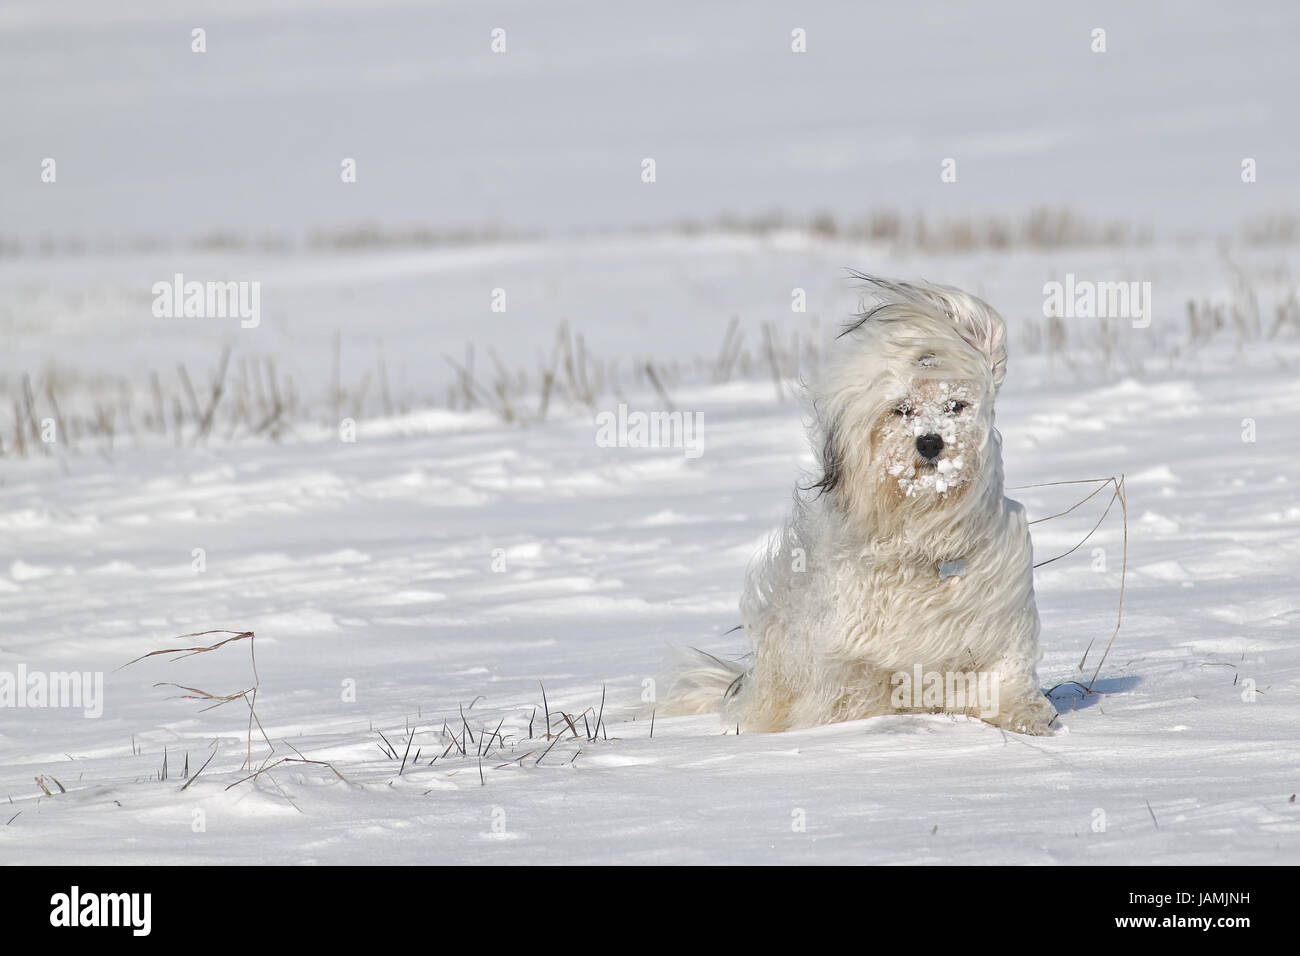 Ein Hund sitzt im Schnee mit Schneeklumpen im Fell, dabei weht ein eiskalter Wind. Stock Photo